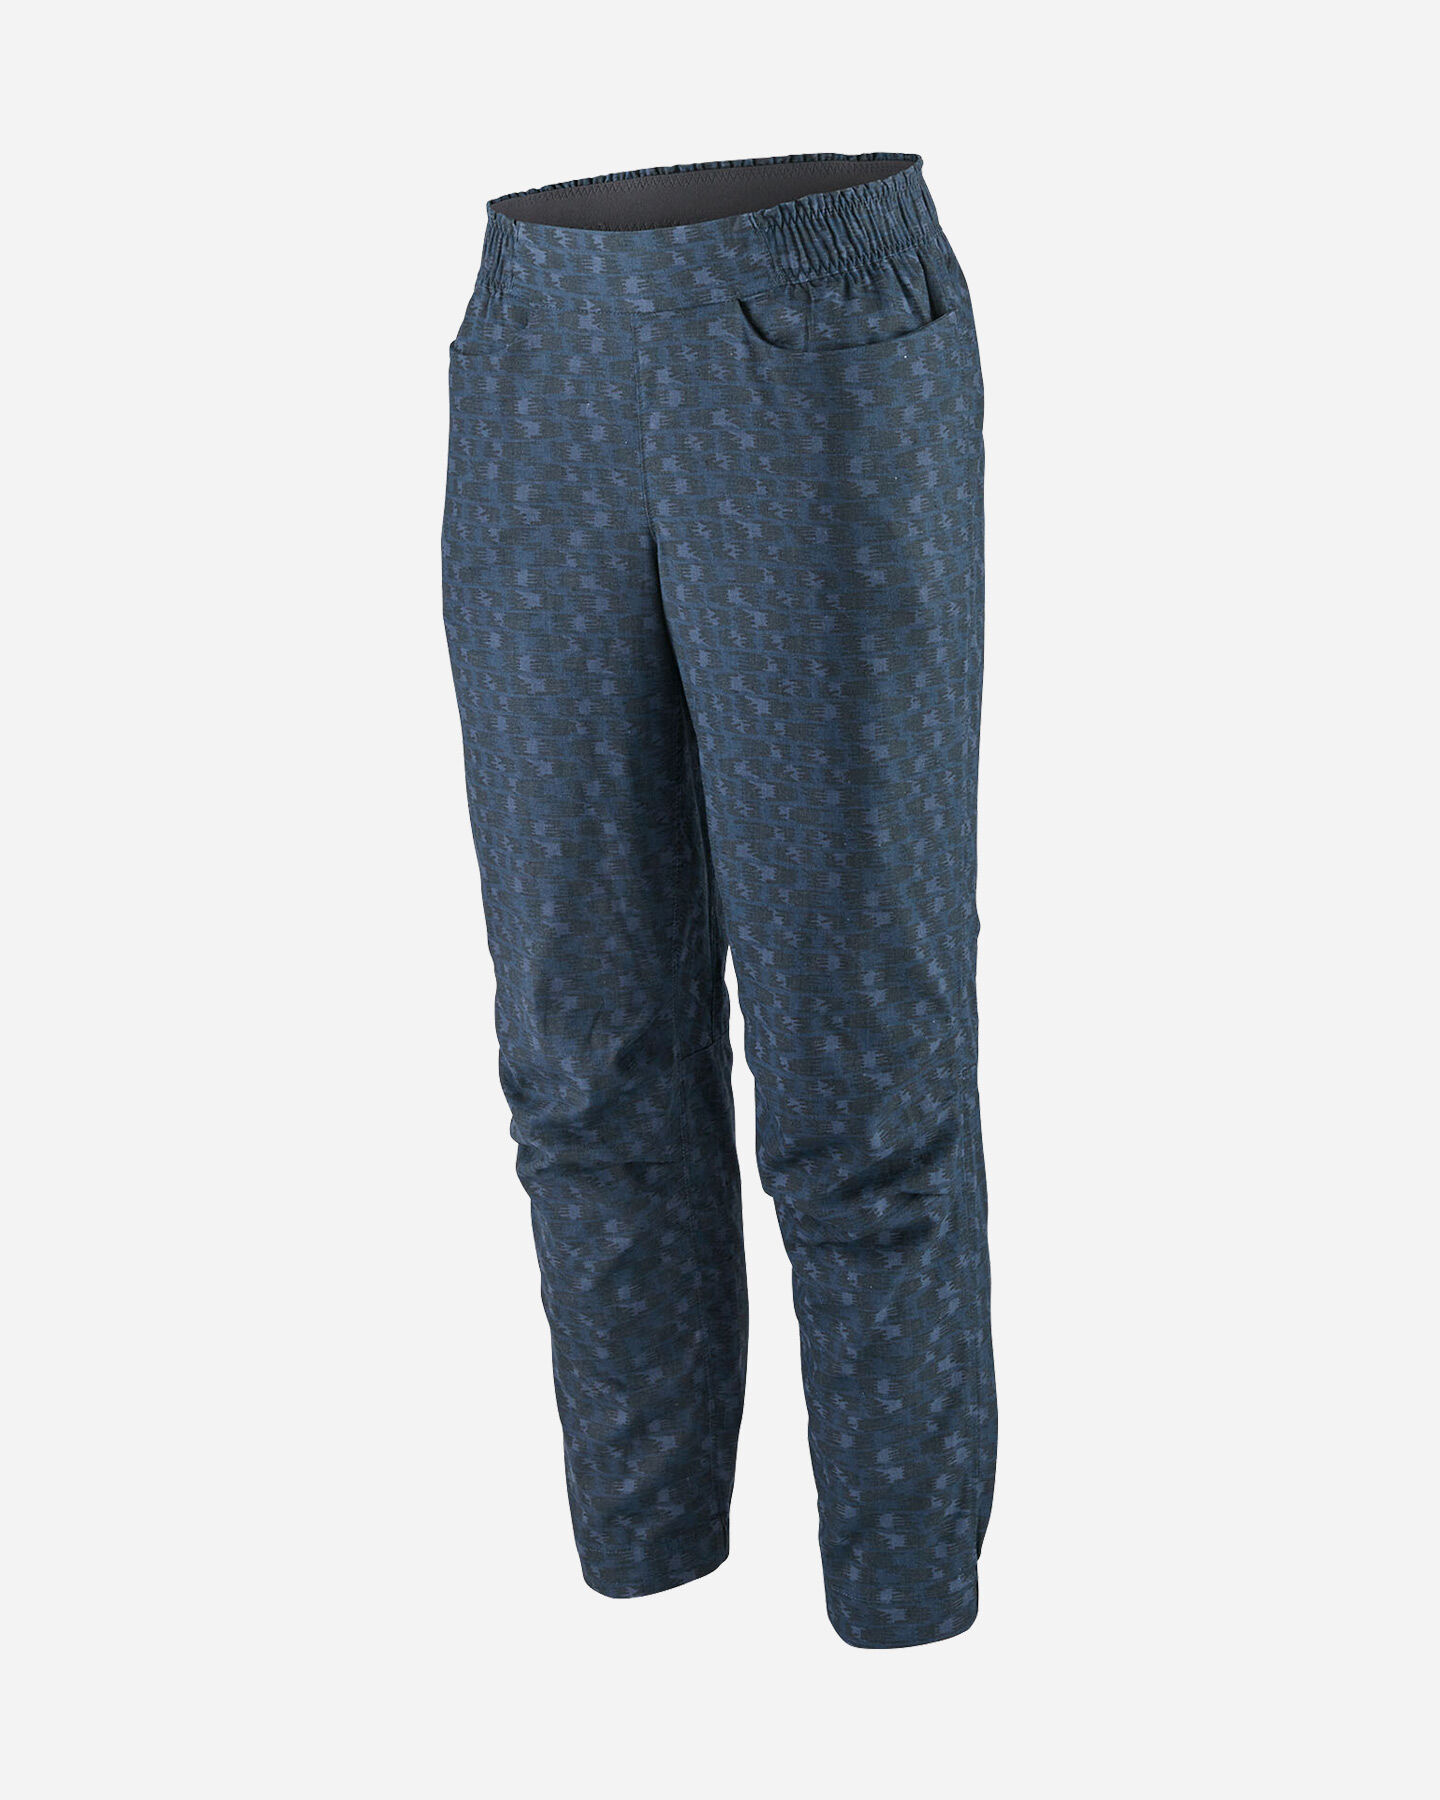  Pantalone outdoor PATAGONIA HAMPI ROCK W S5555045|IHSB|4 scatto 0